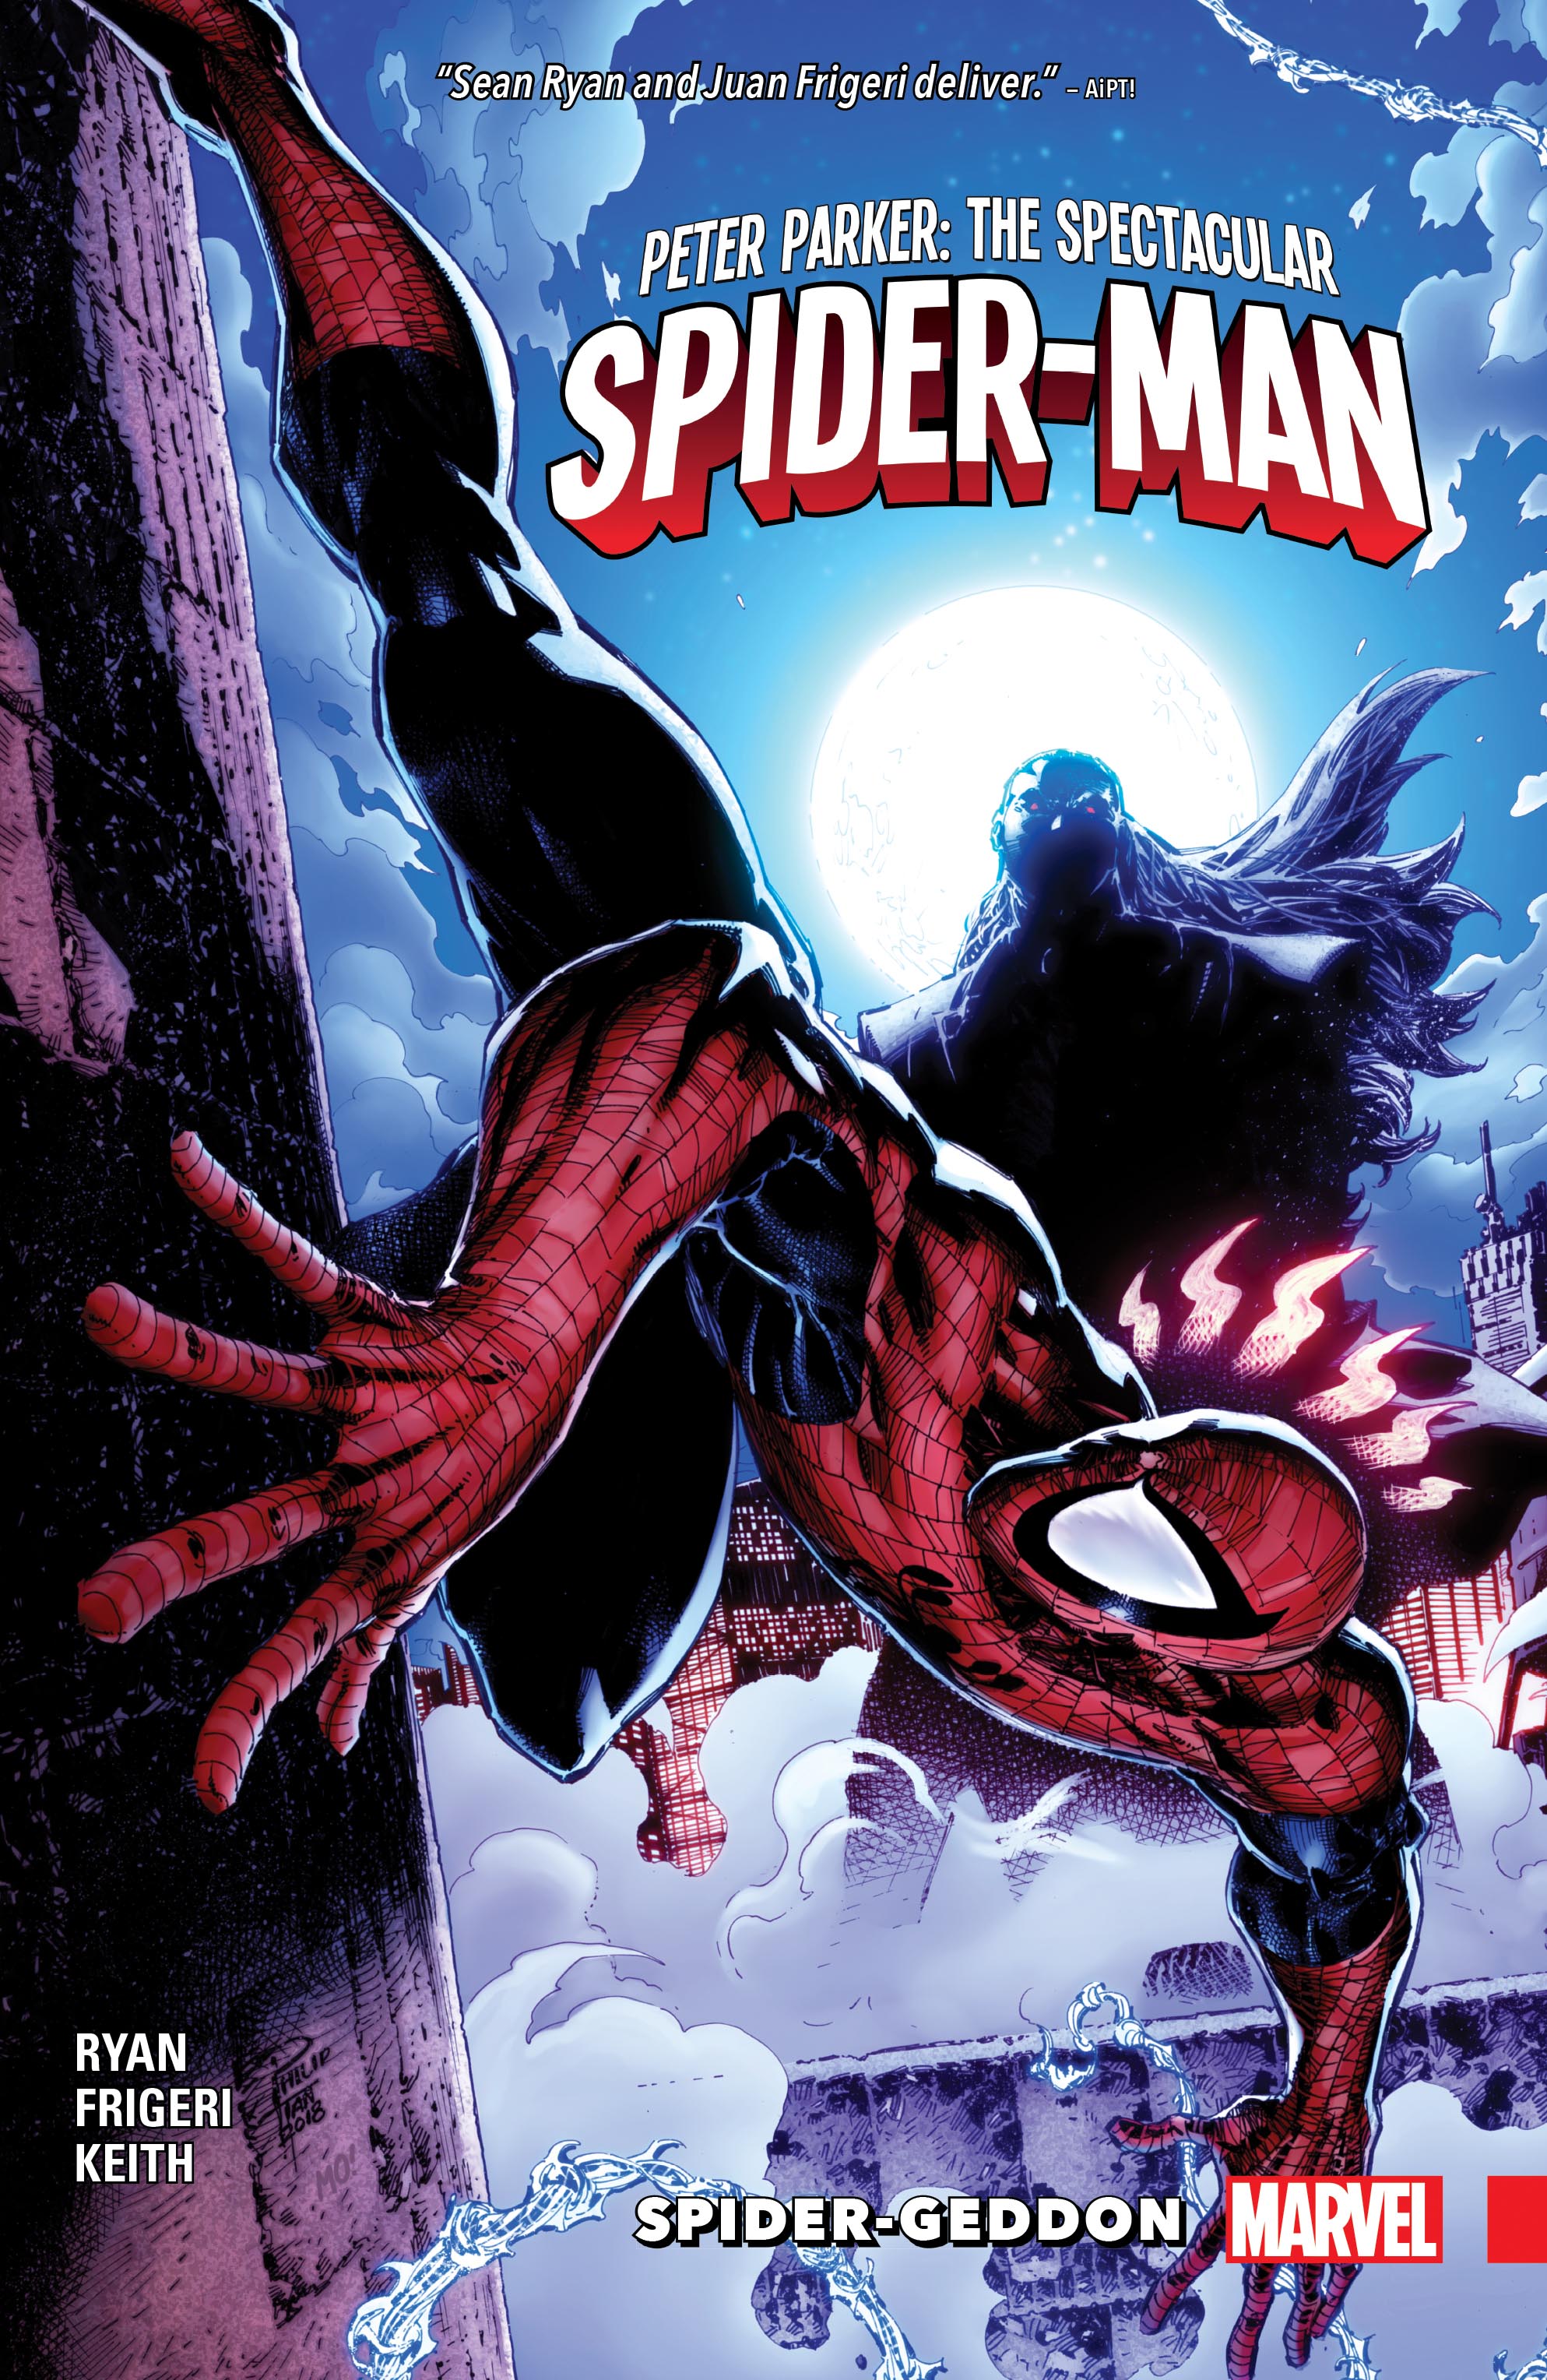 Peter Parker: The Spectacular Spider-Man Vol. 5 - Spider-Geddon (Trade Paperback)